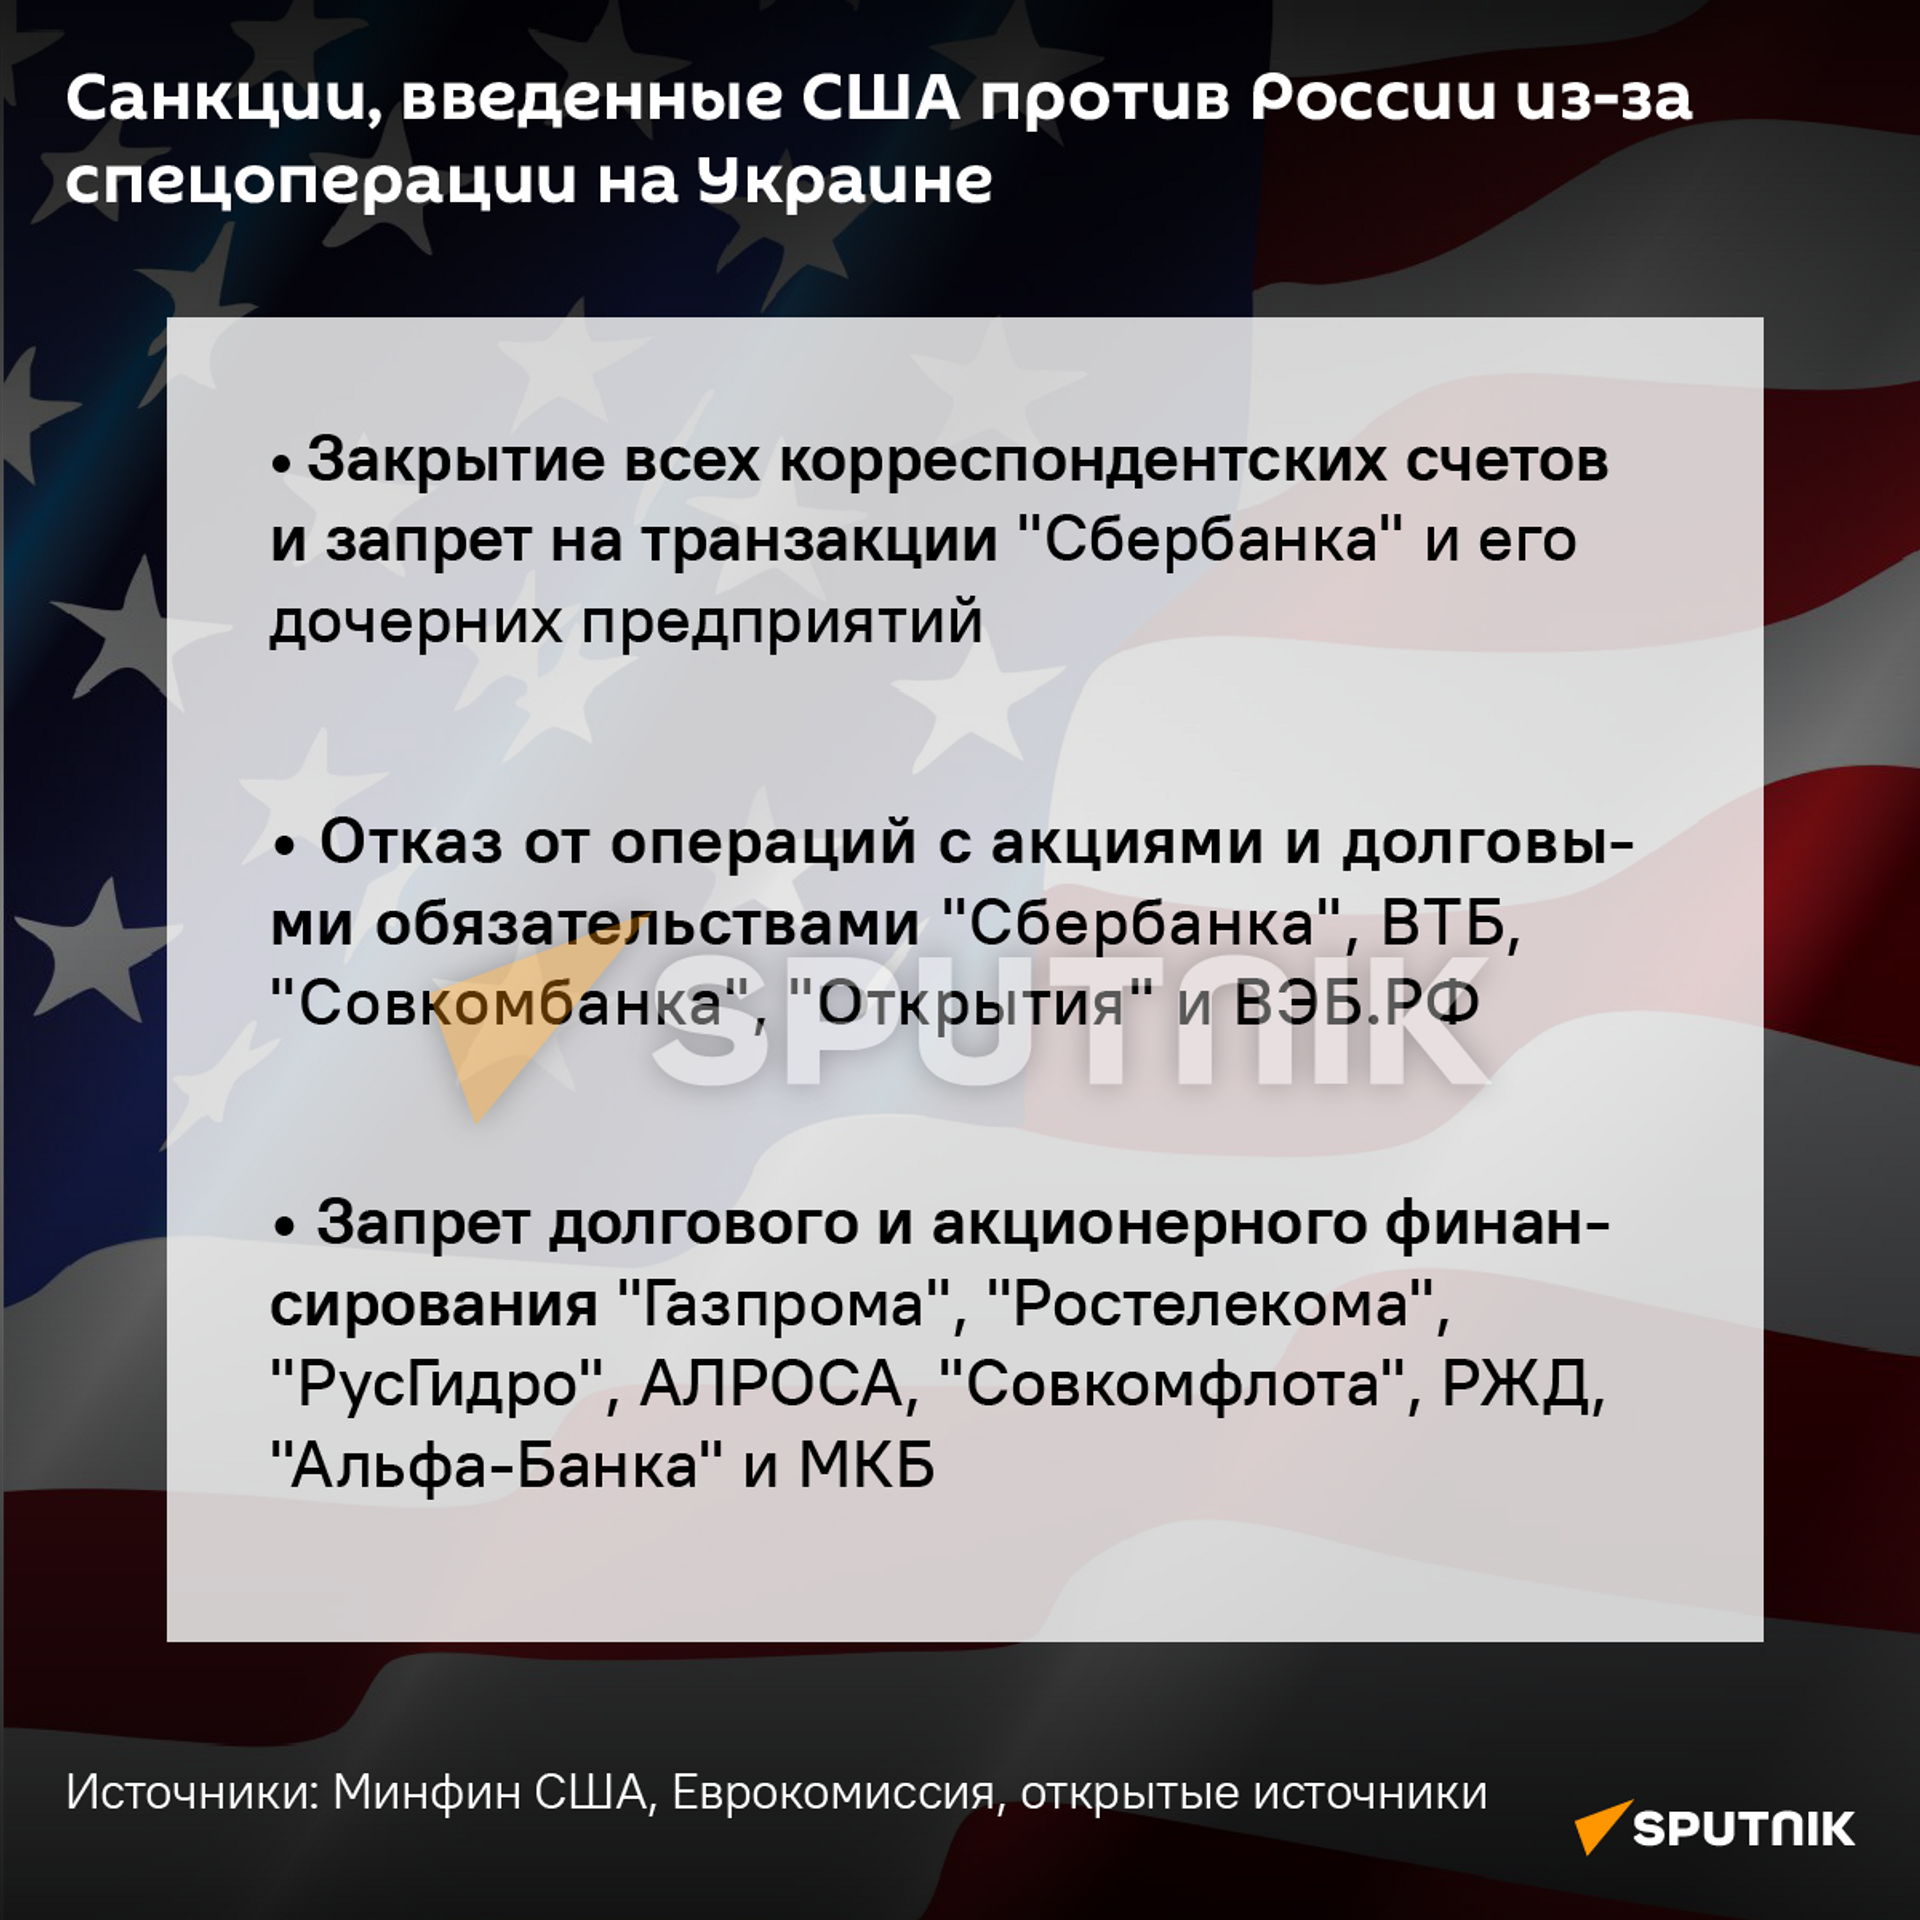 Санкции США, введенные против России - Sputnik Таджикистан, 1920, 26.02.2022